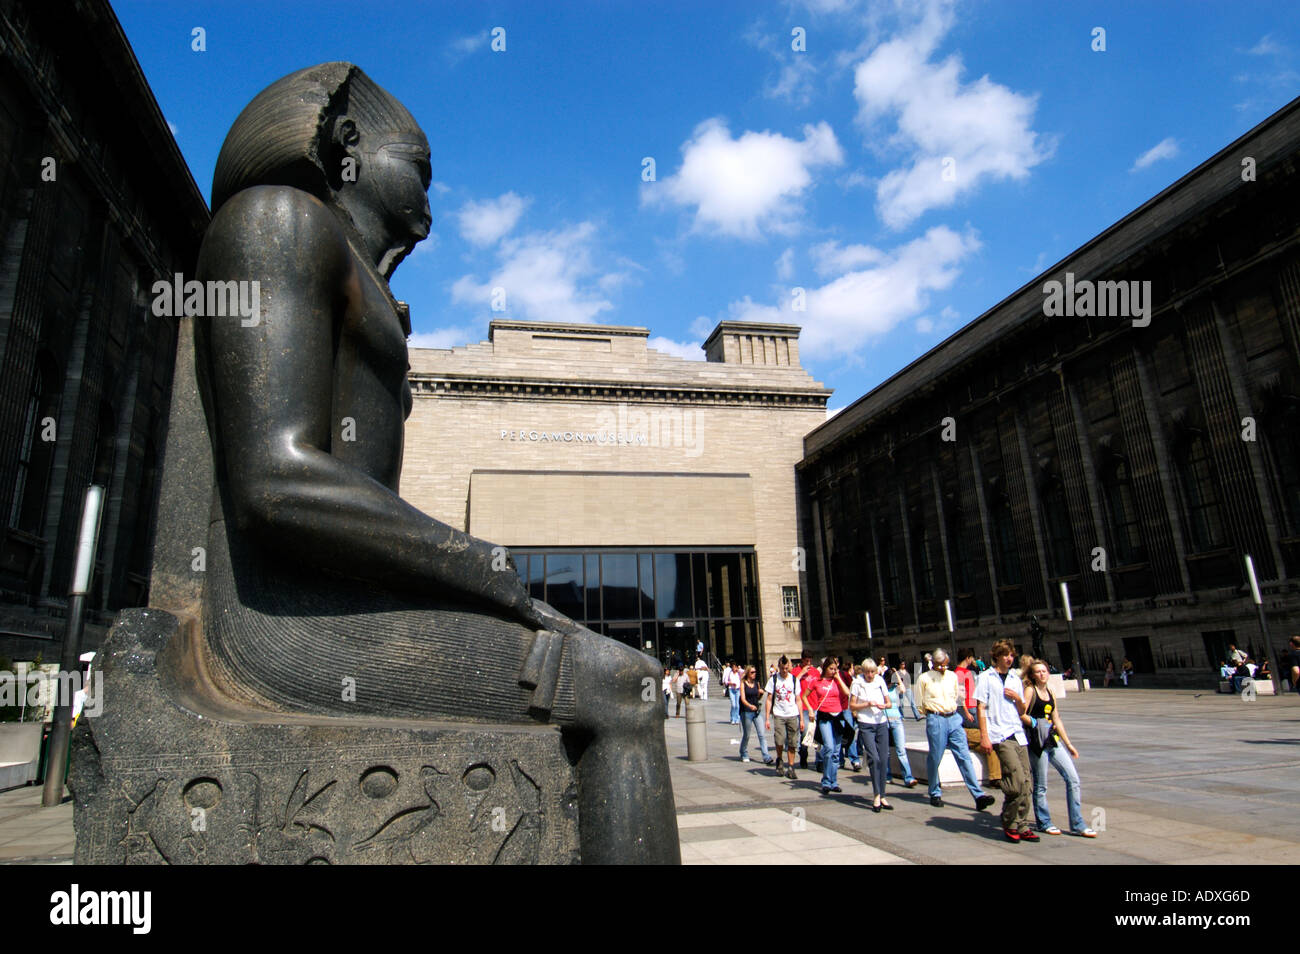 Statue égyptienne au cour d'entrée de Musée Pergamon de Berlin Mitte Allemagne Banque D'Images